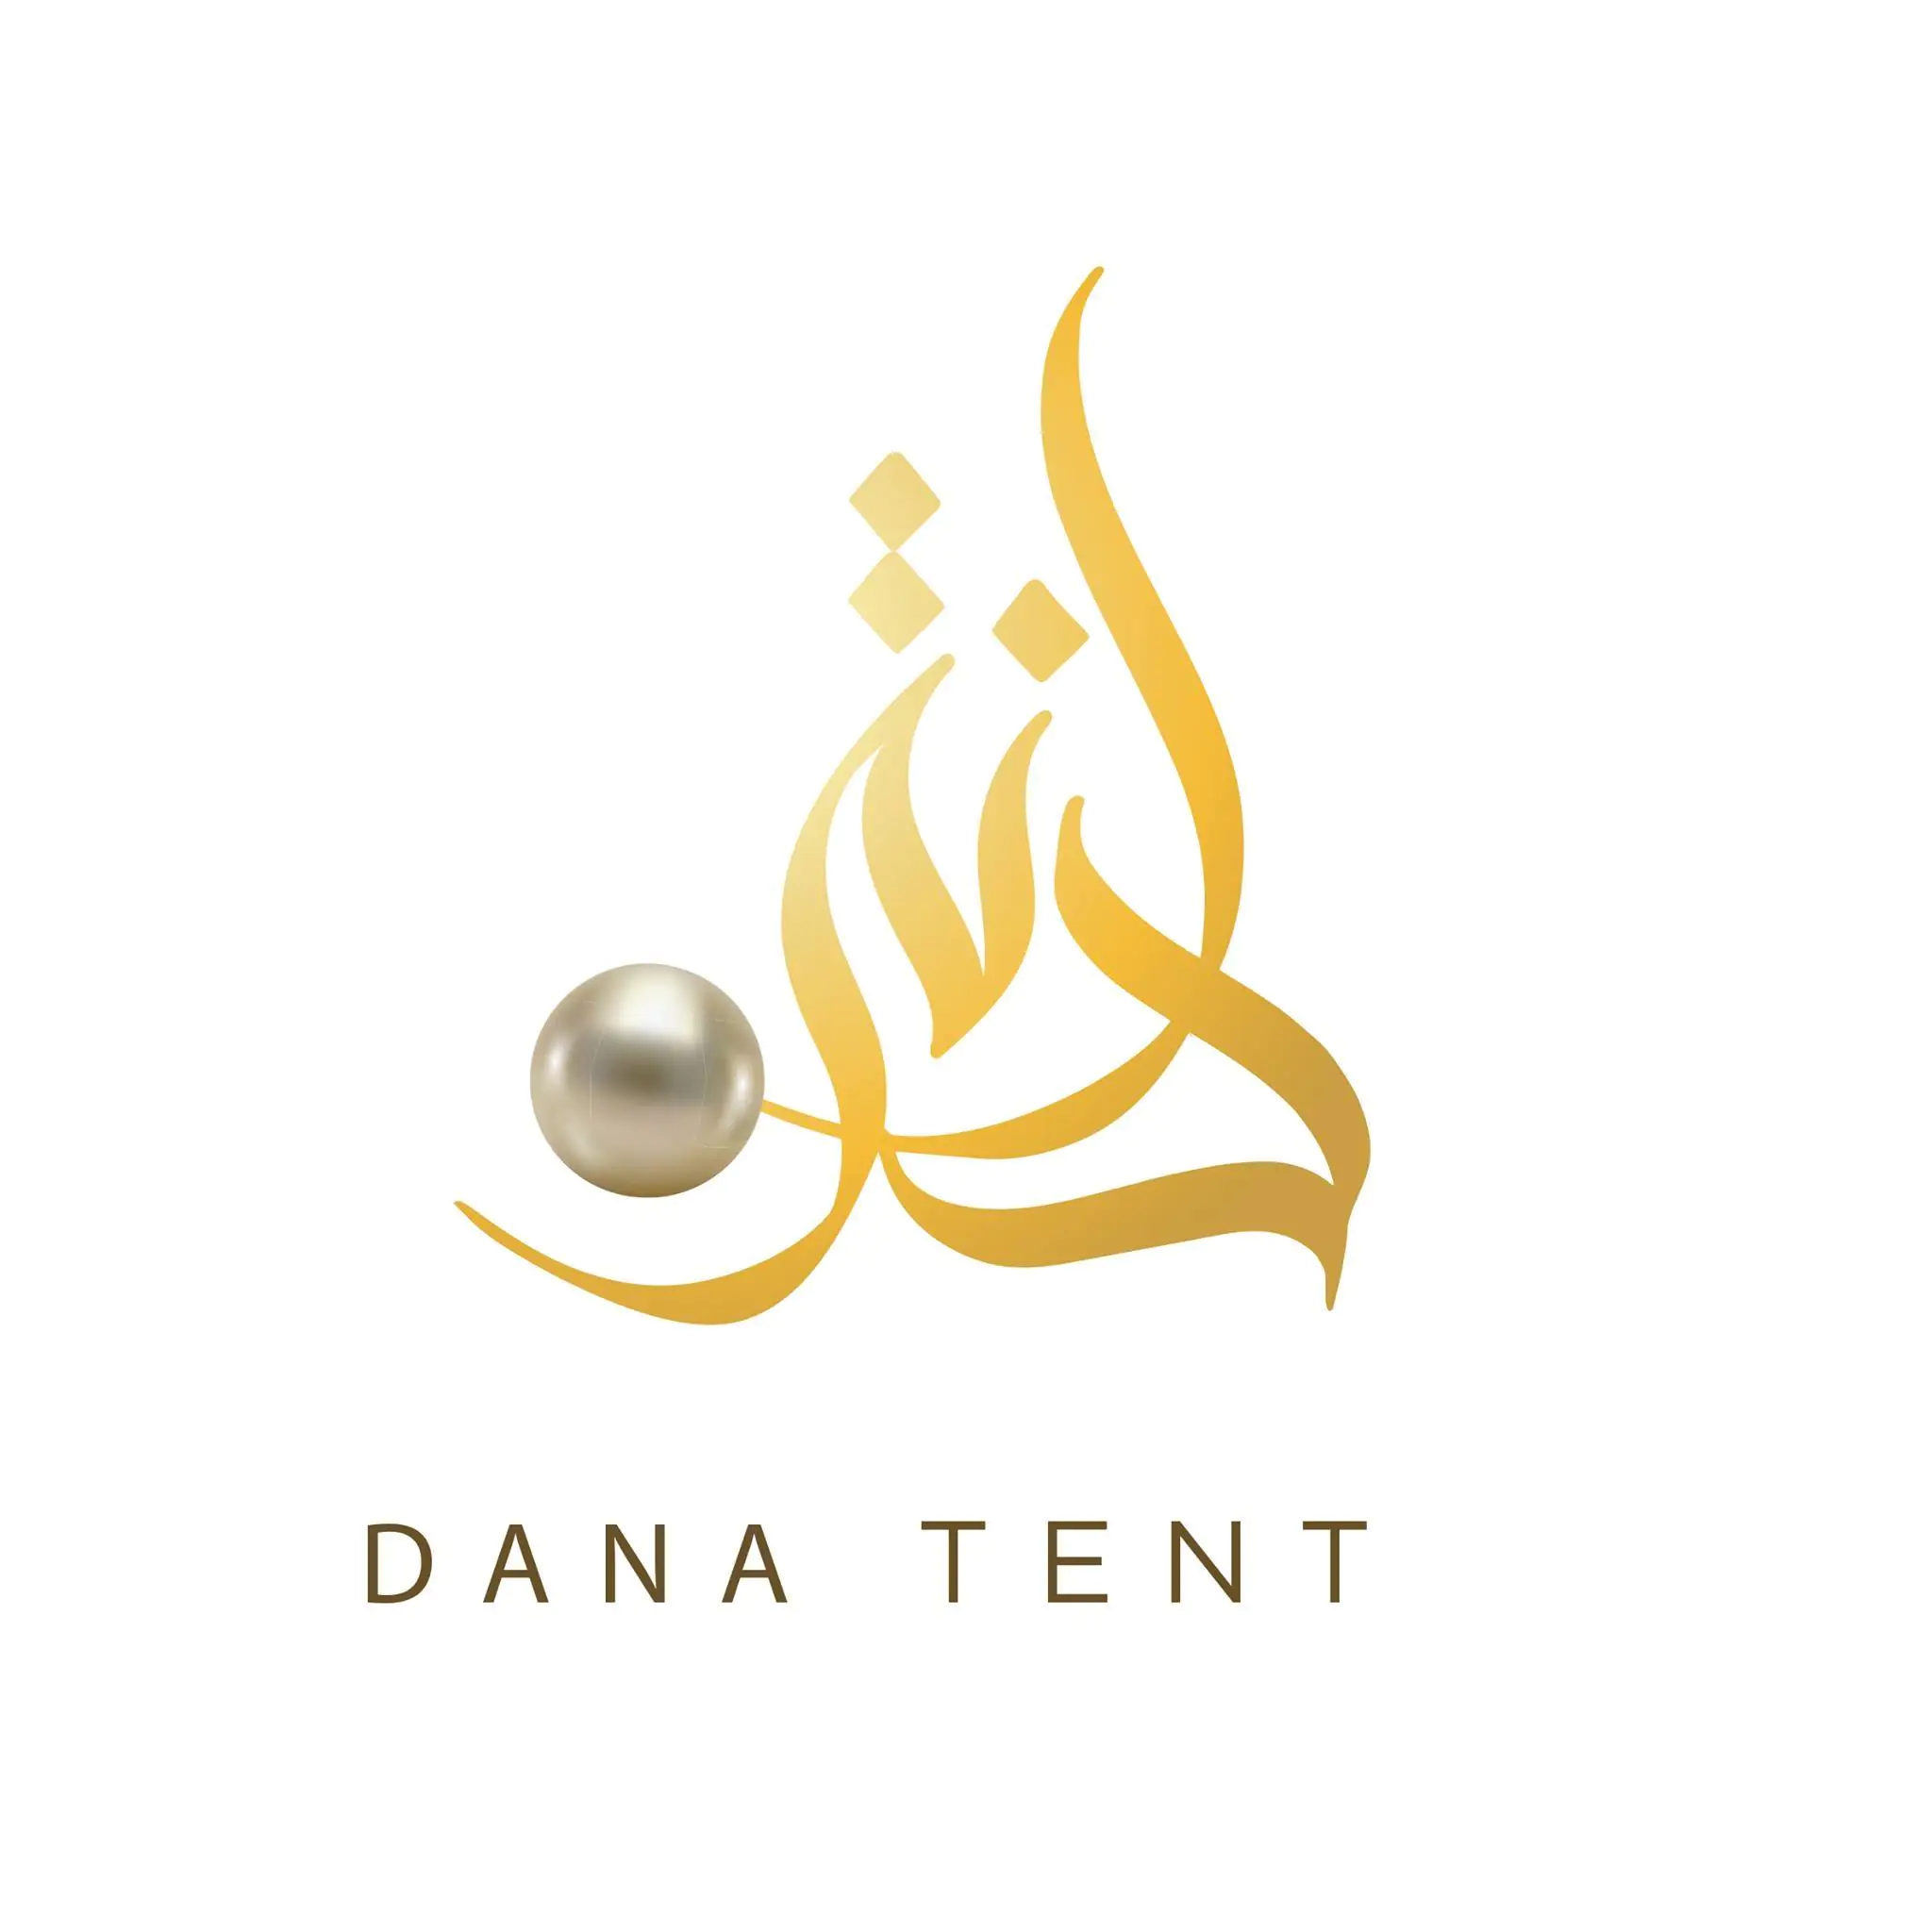 Al Dana Tent - Coming Soon in UAE